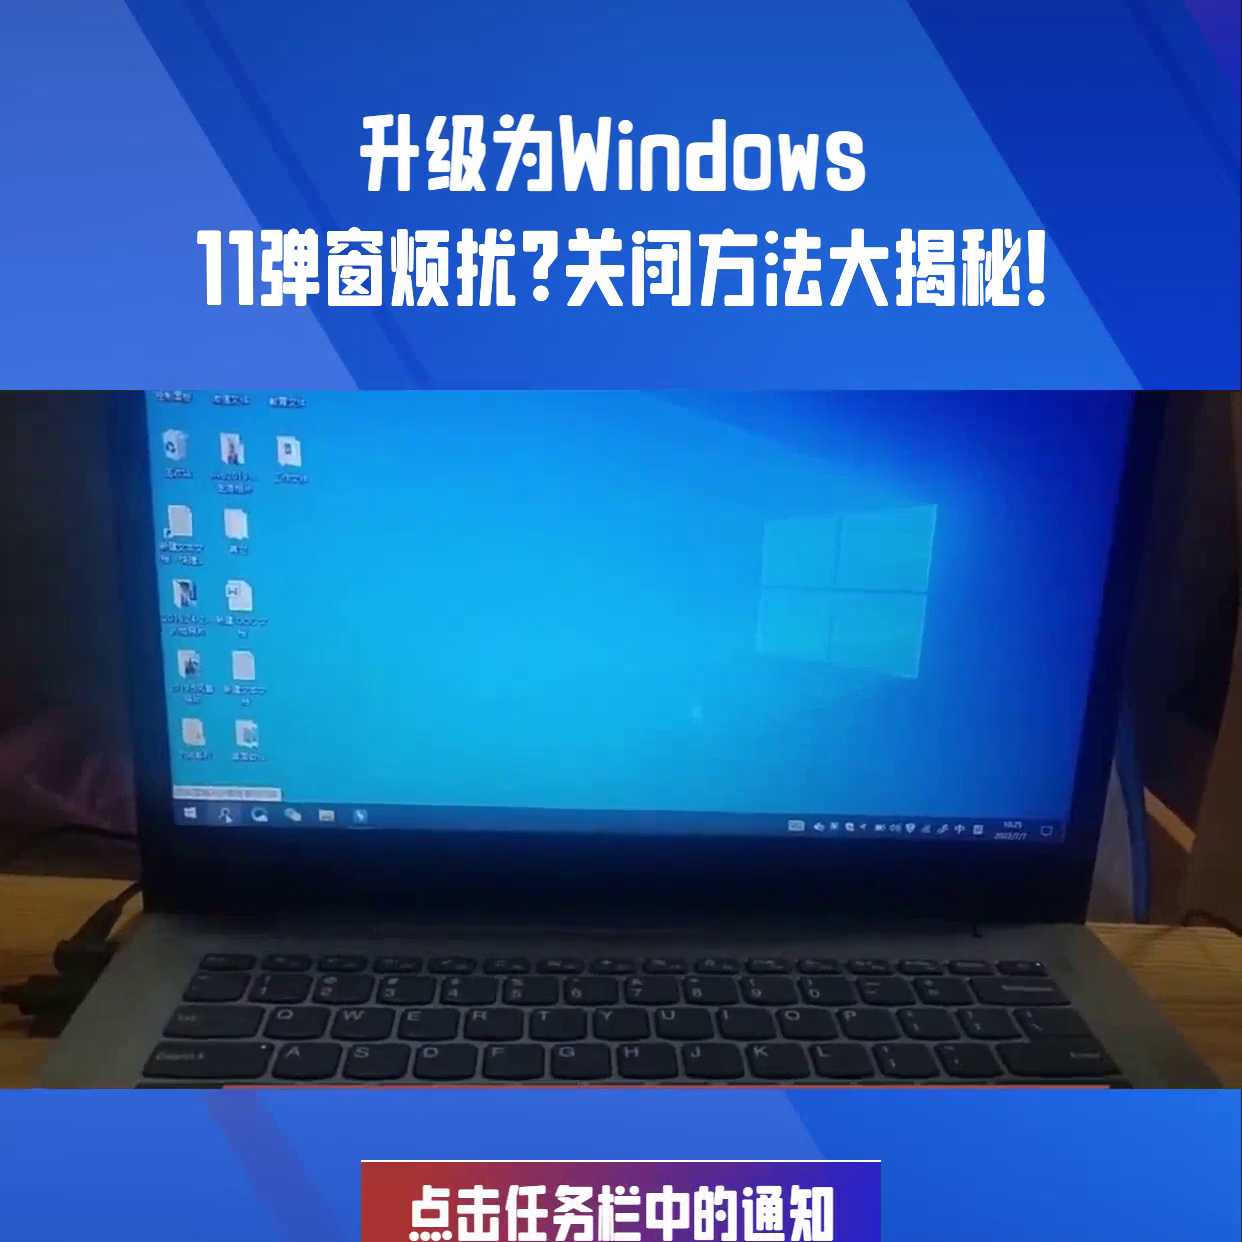 Windows 10用的好好的，但总是弹出让你升级为W...